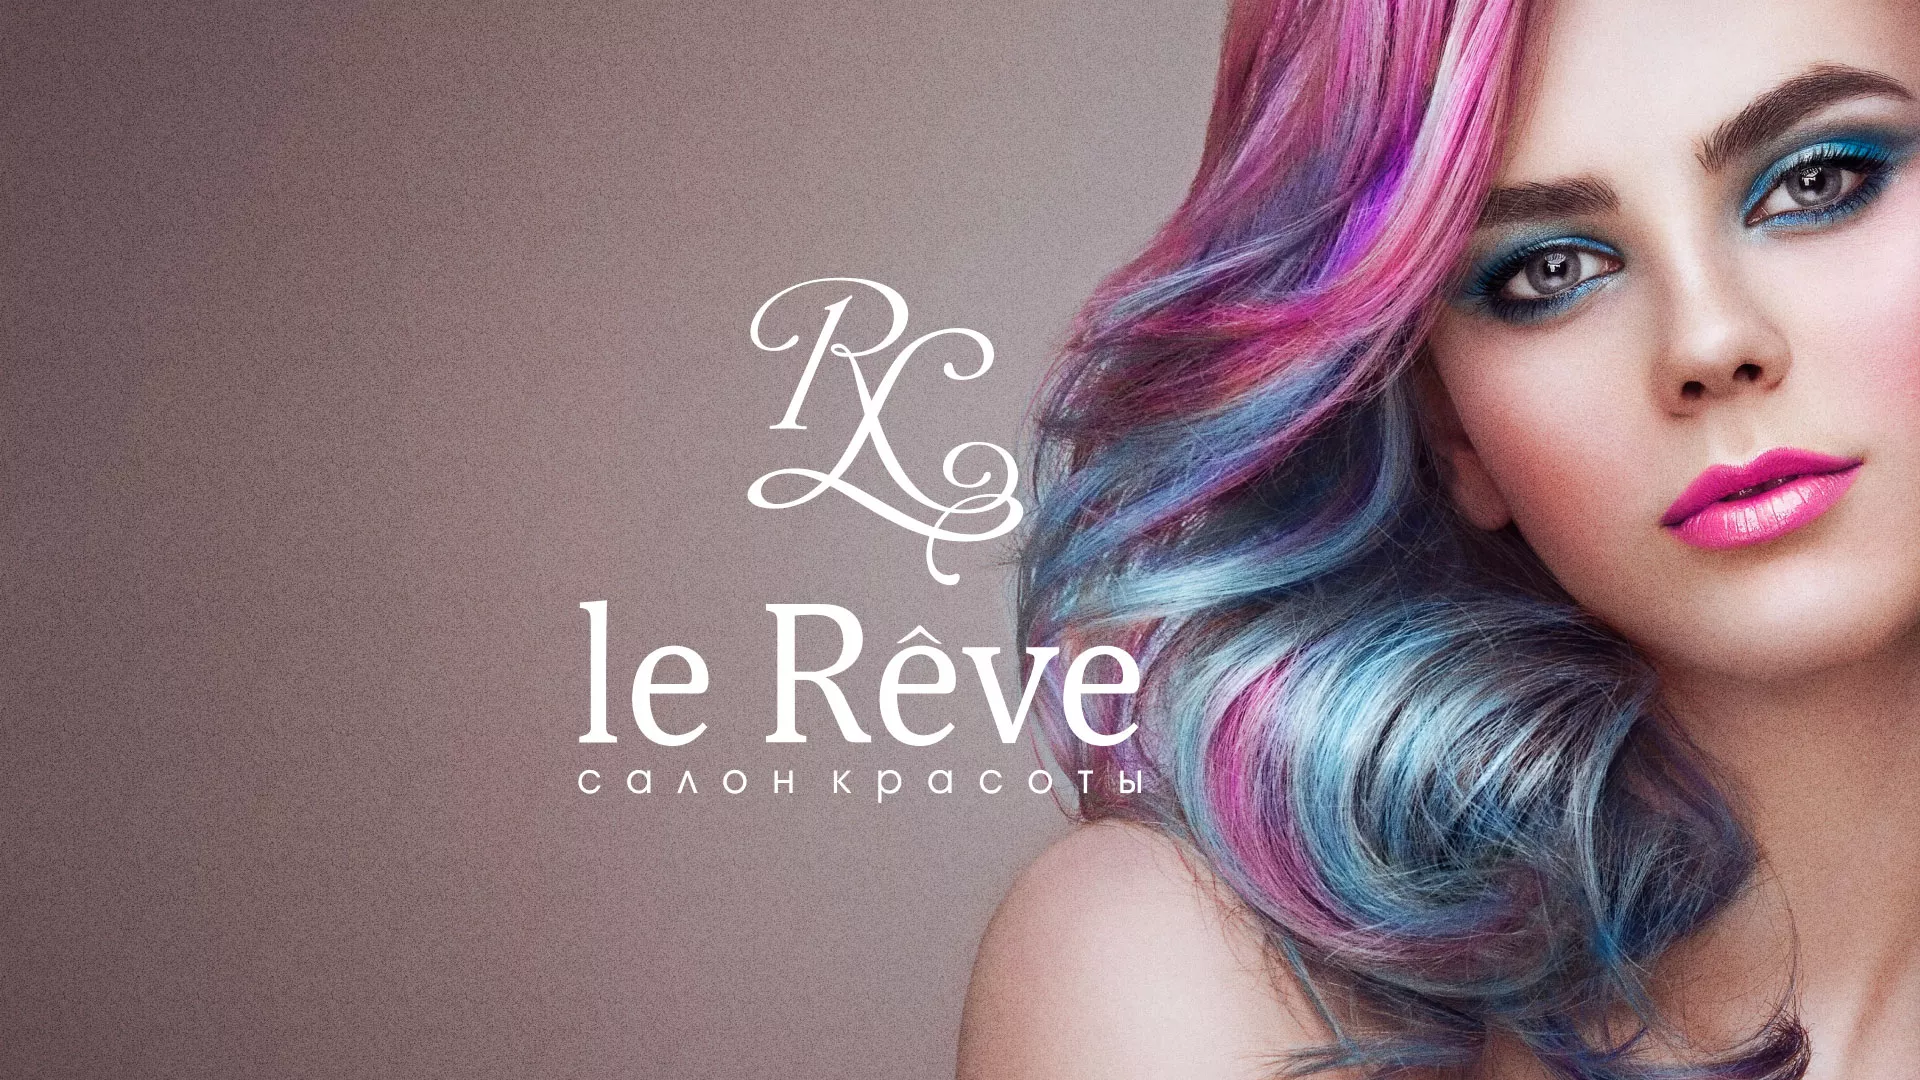 Создание сайта для салона красоты «Le Reve» в Бологом